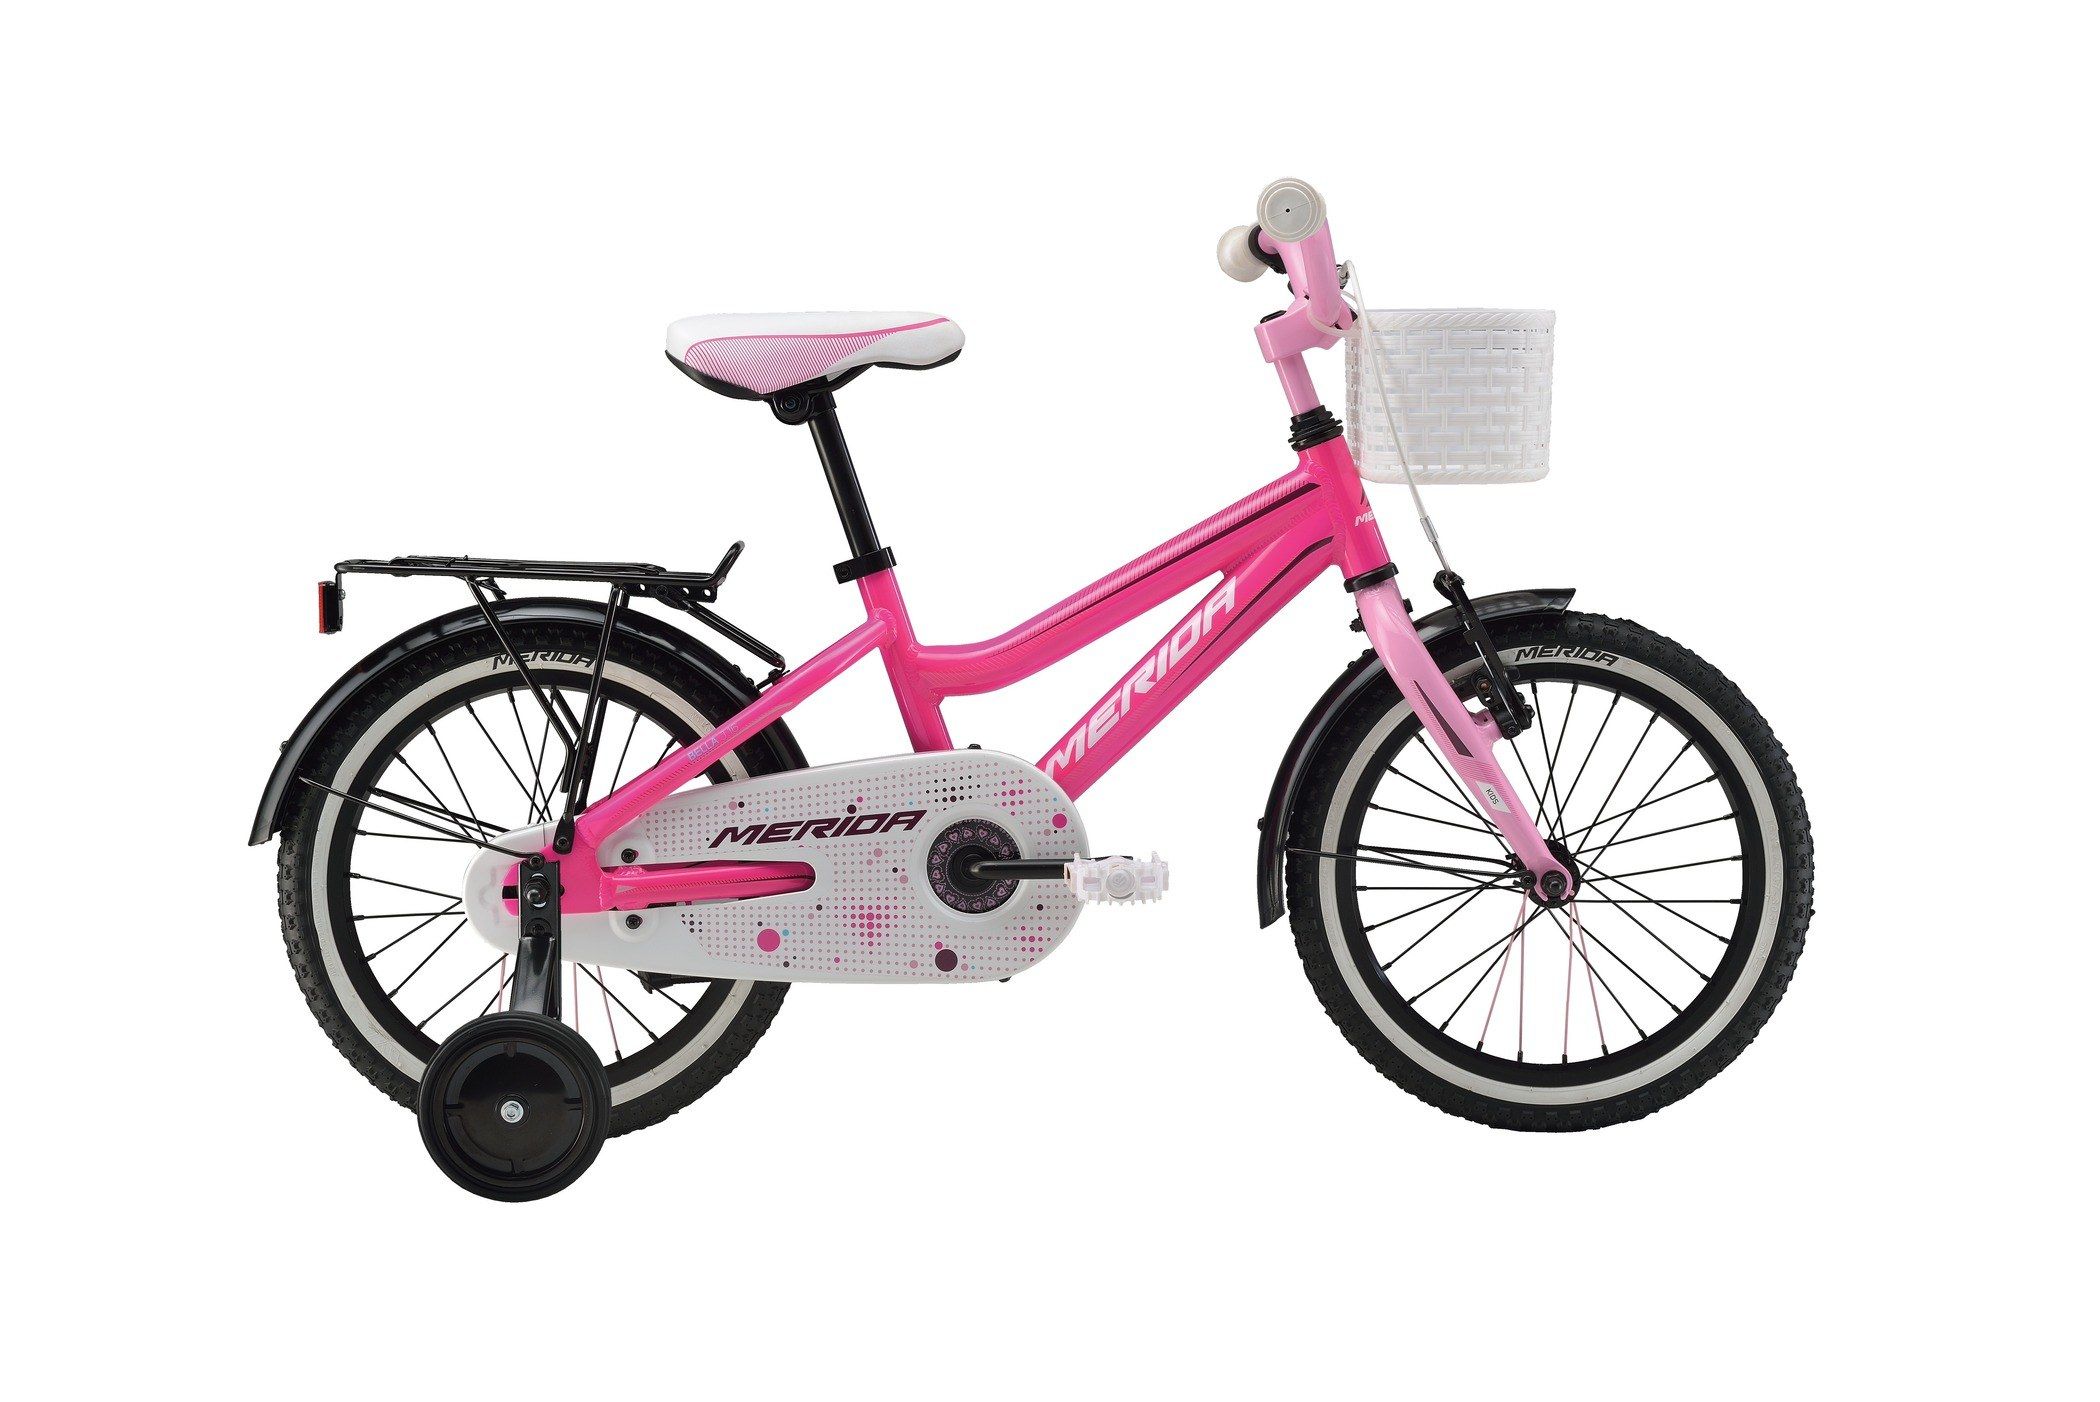  Велосипед трехколесный детский велосипед Merida Bella J16 2016